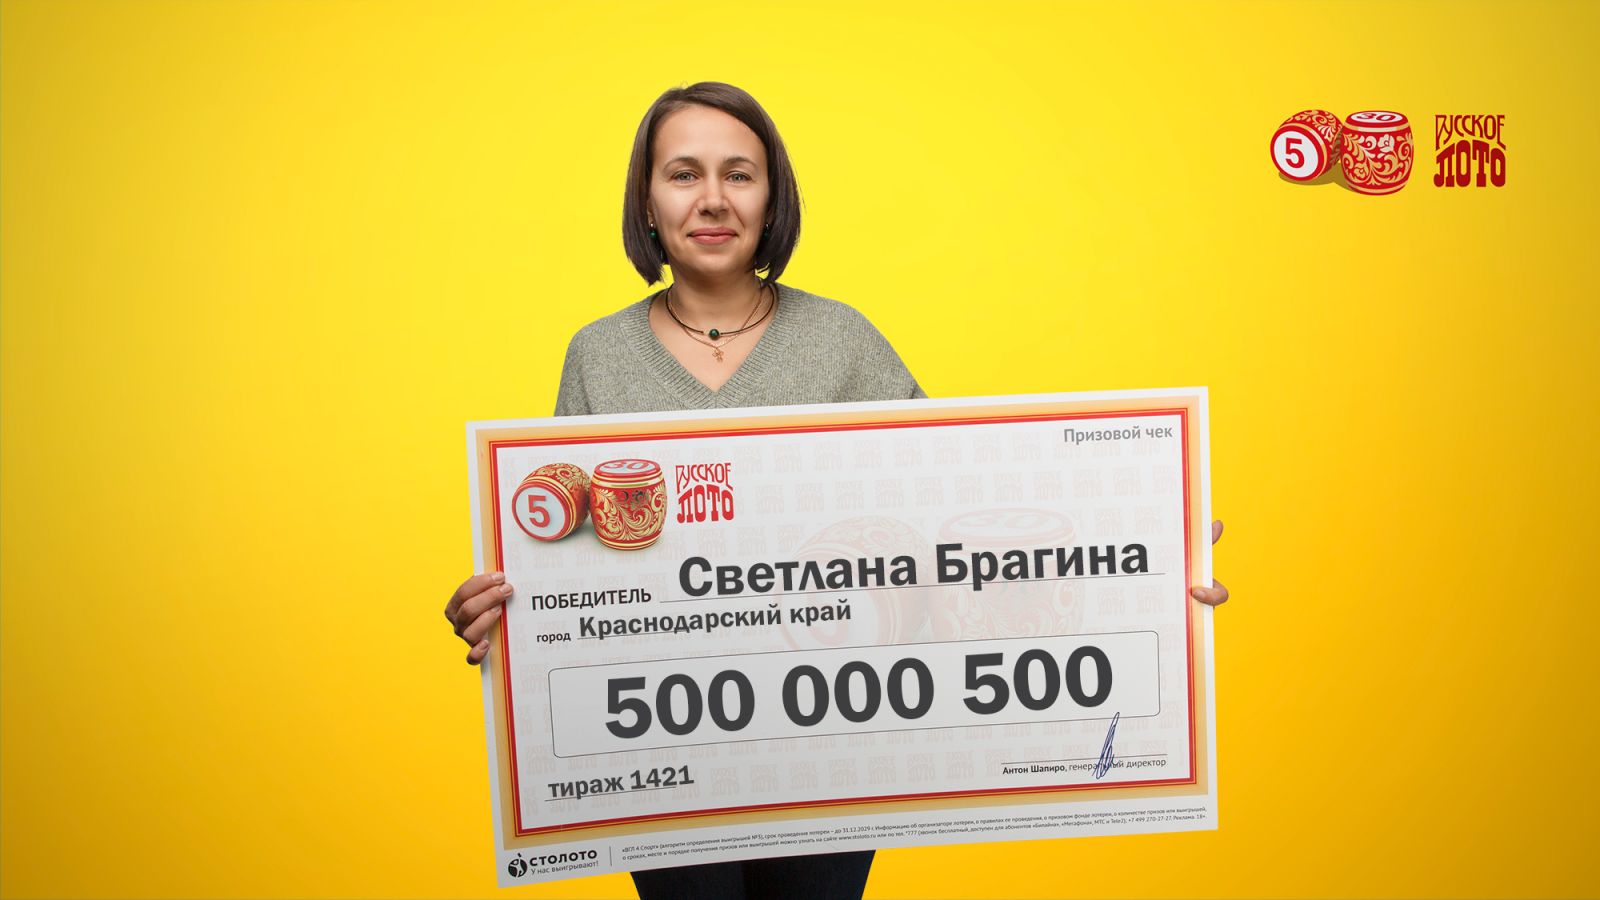 Светлана Брагина выиграла 500 000 500 ₽